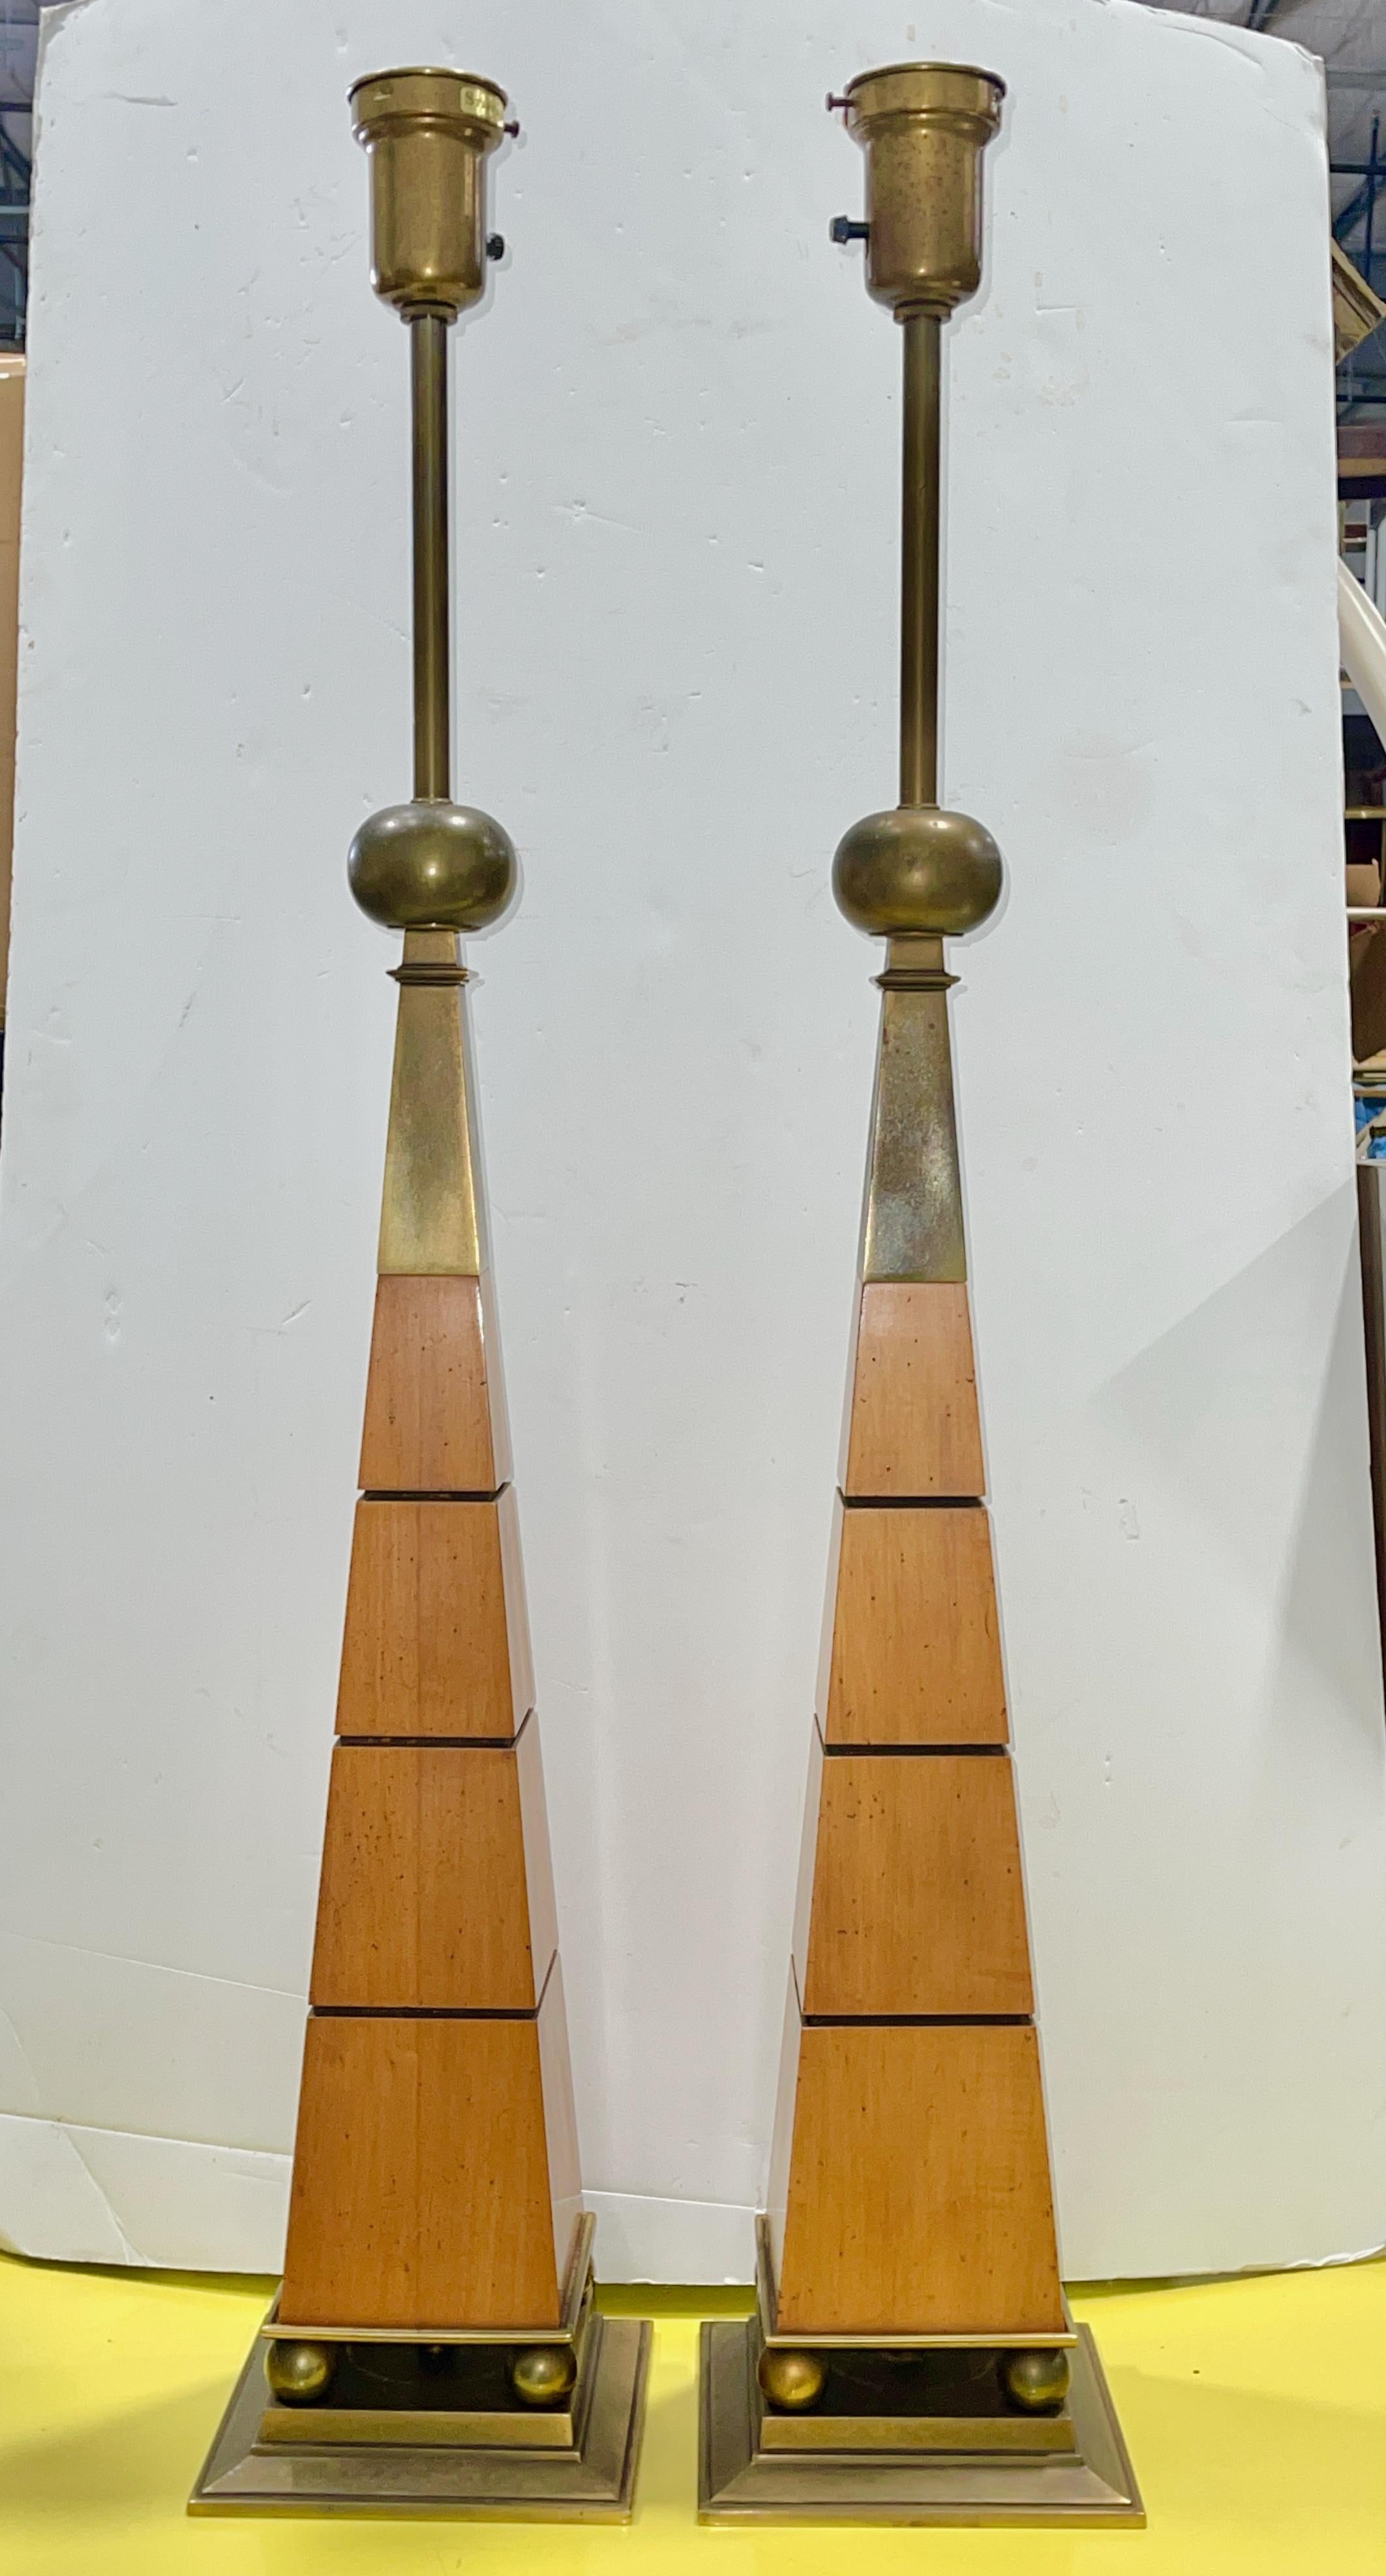 Beeindruckend hohes und architektonisch inspiriertes Paar Vintage-Tischlampen aus den 1960er Jahren im Stil von Tommi Parzinger aus Pekannussholz und bronzefarbenem Messing.
Vier Kugeln auf einem Sockel tragen einen sich verjüngenden obeliskförmigen